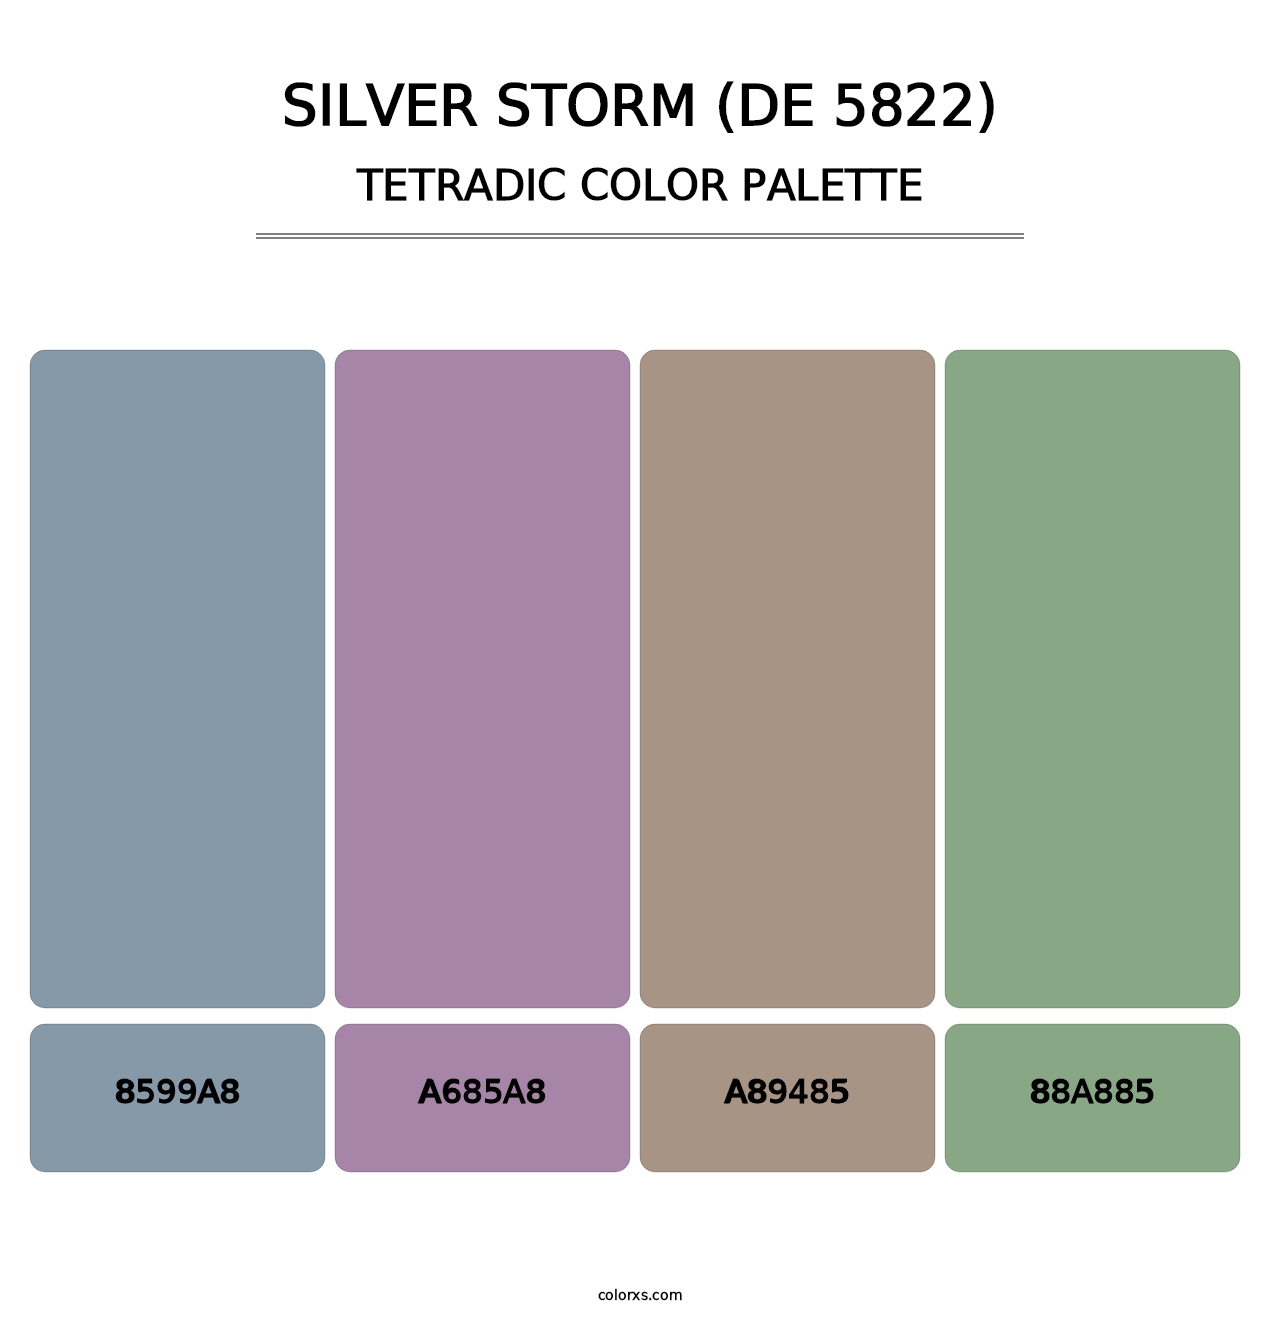 Silver Storm (DE 5822) - Tetradic Color Palette